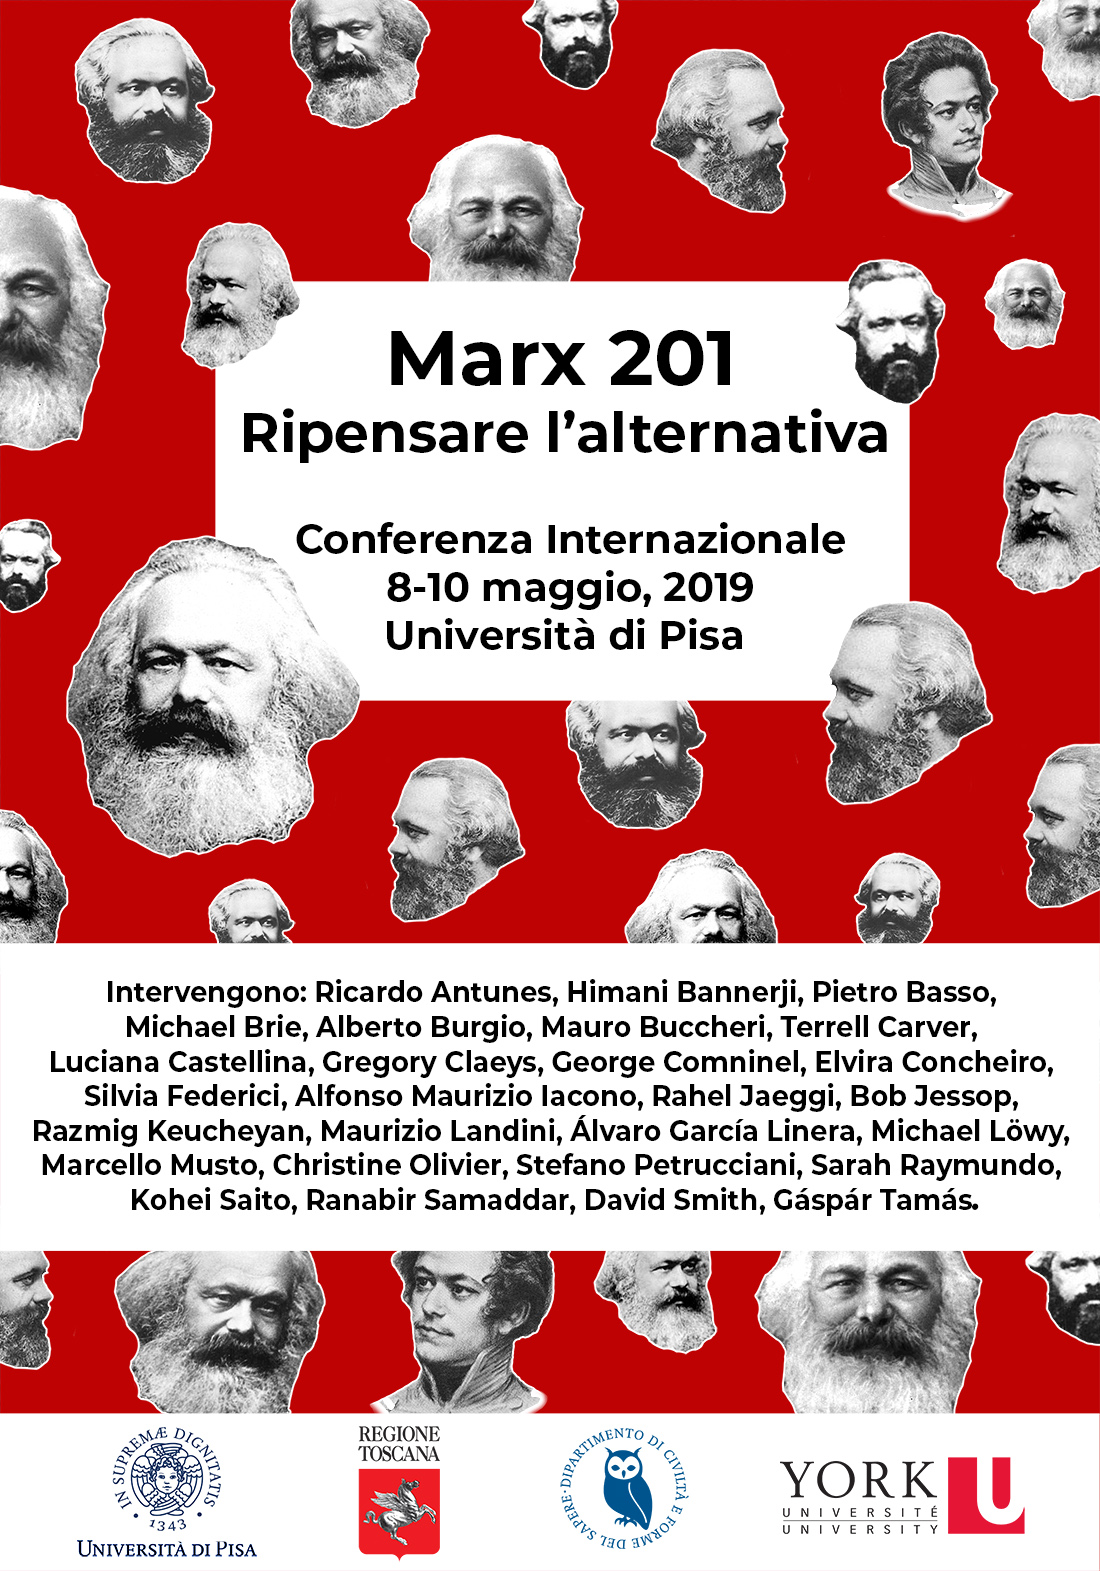 Marx 201 - Ripensare l’alternativa - 8-10 maggio, Università di Pisa 